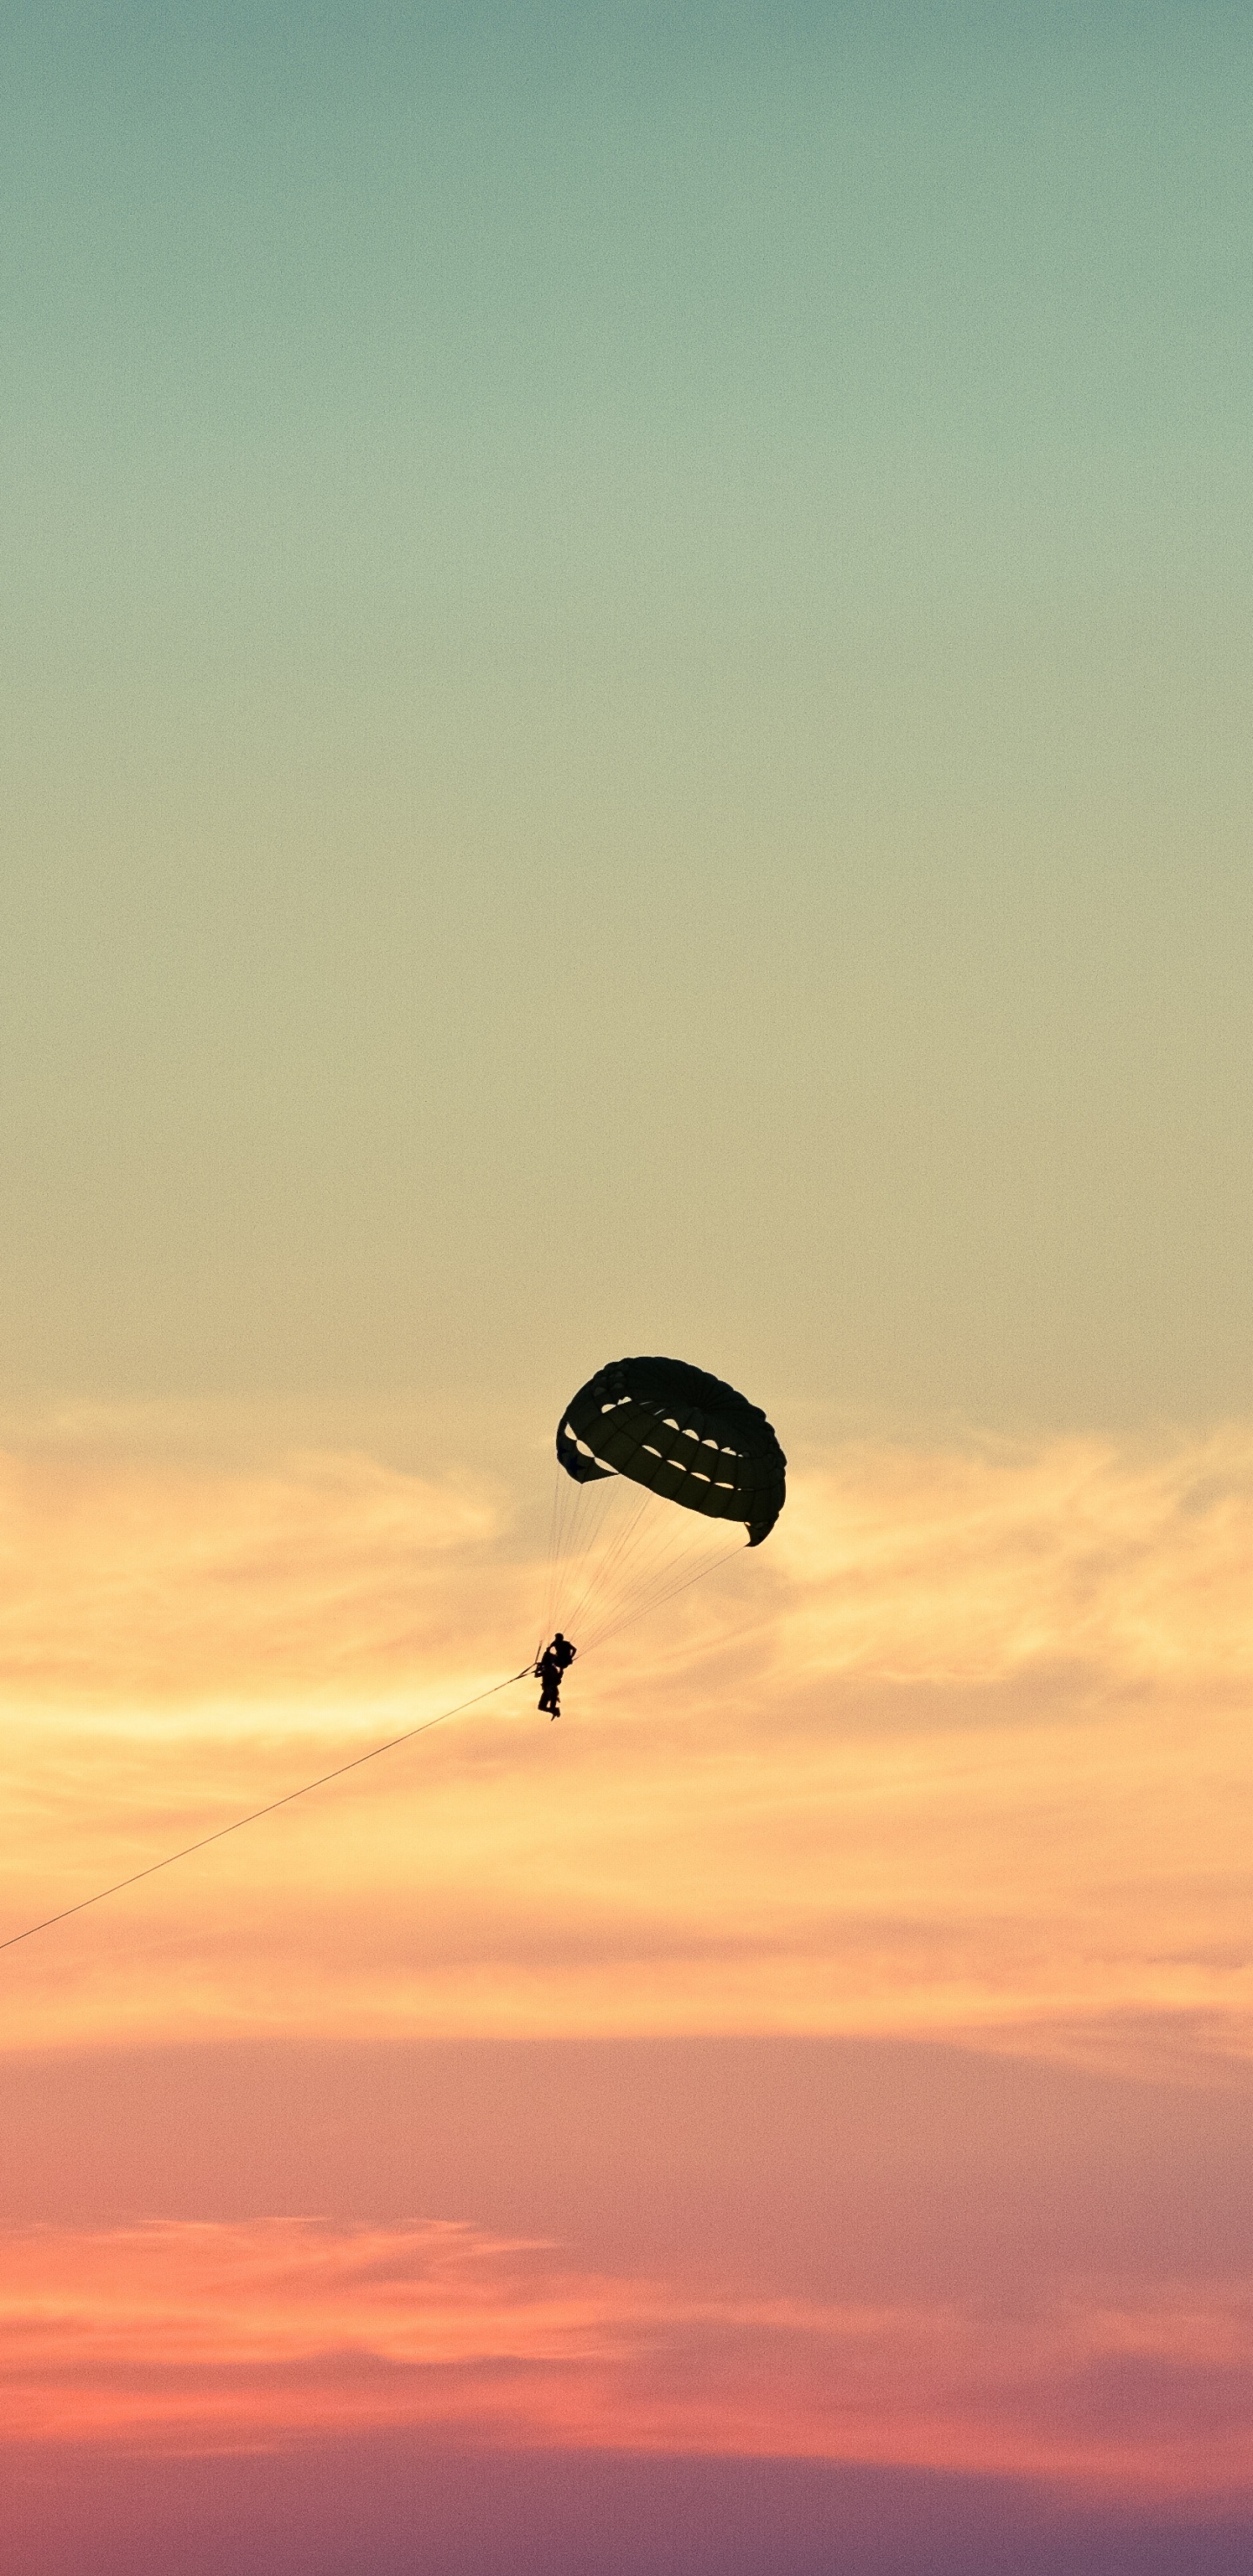 降落伞, 空中运动, 极限运动, 地平线, 伞兵 壁纸 1440x2960 允许